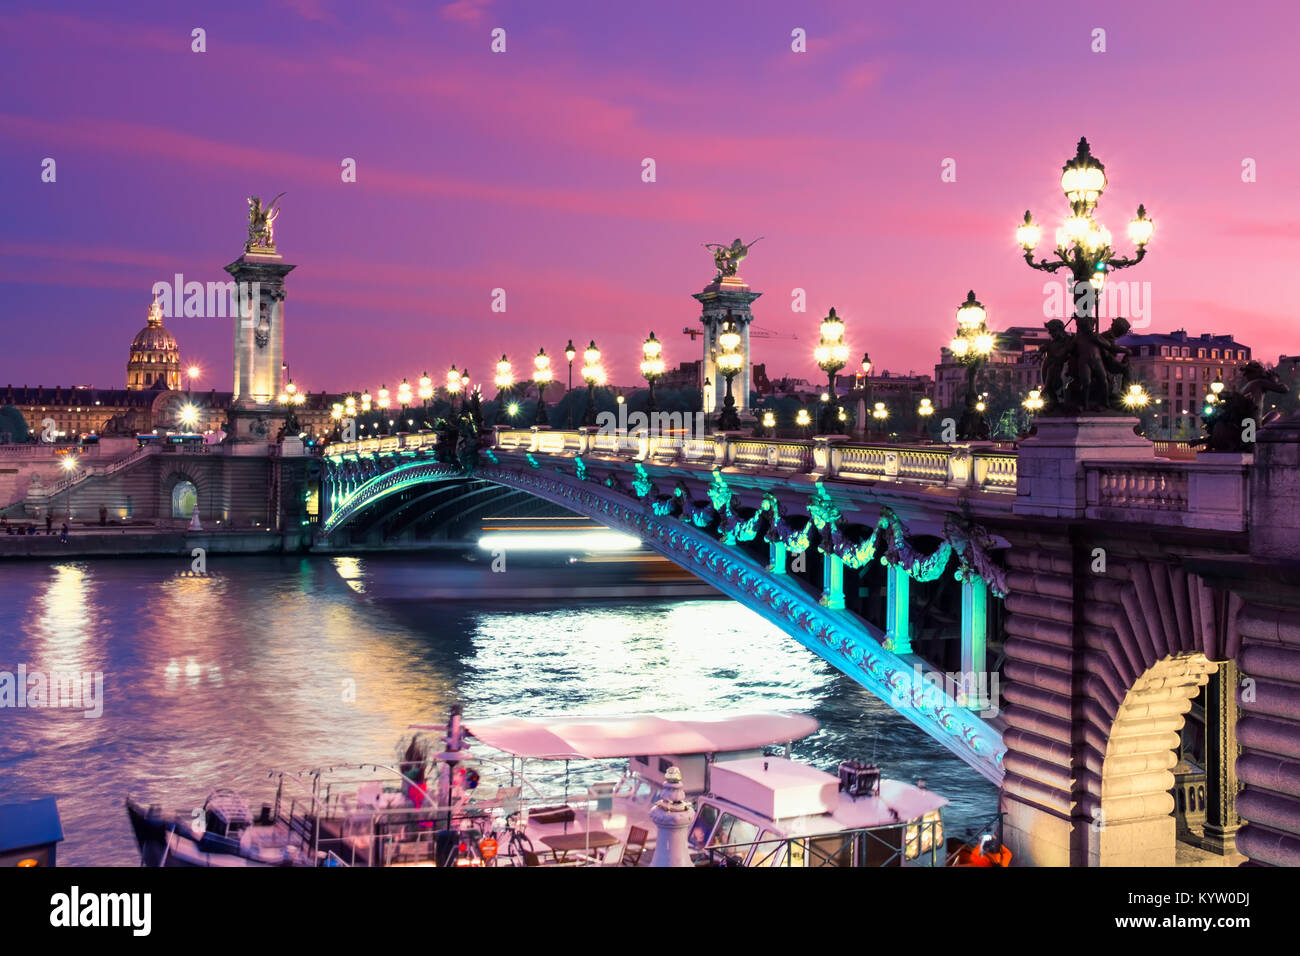 Alexandre Bridge in Paris at night in illumination, toned image. Stock Photo